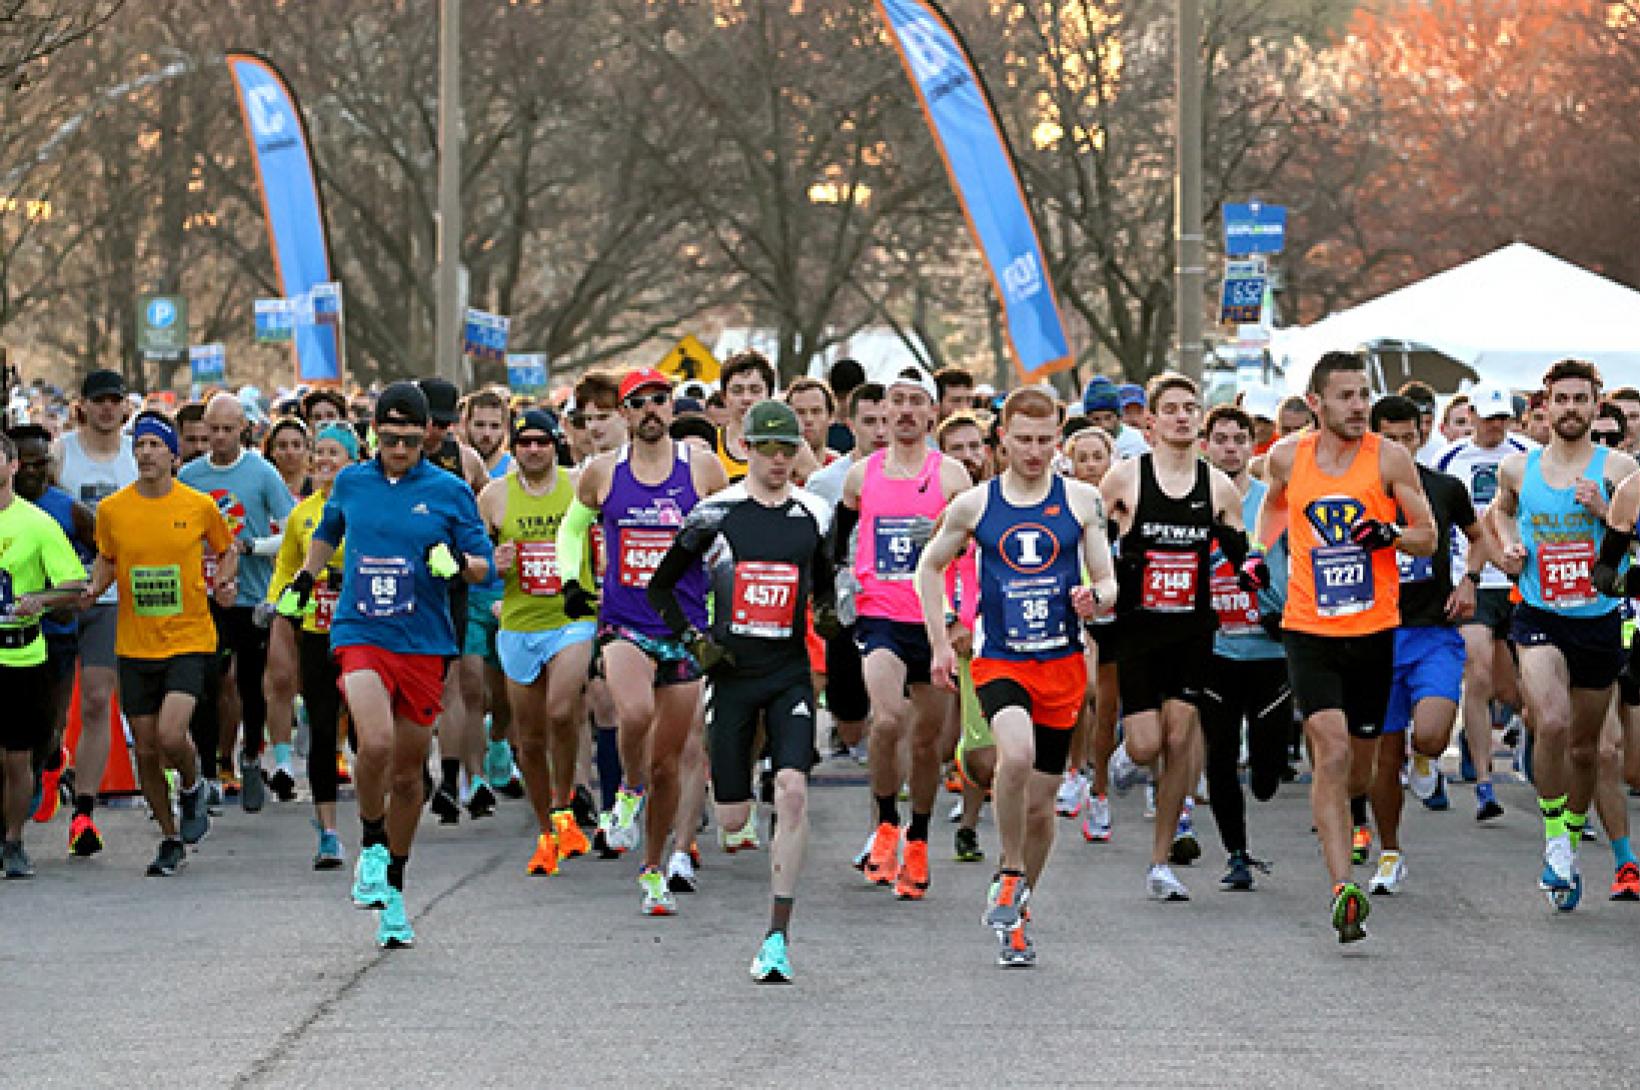 Marathon participants in St. Louis, Missouri.